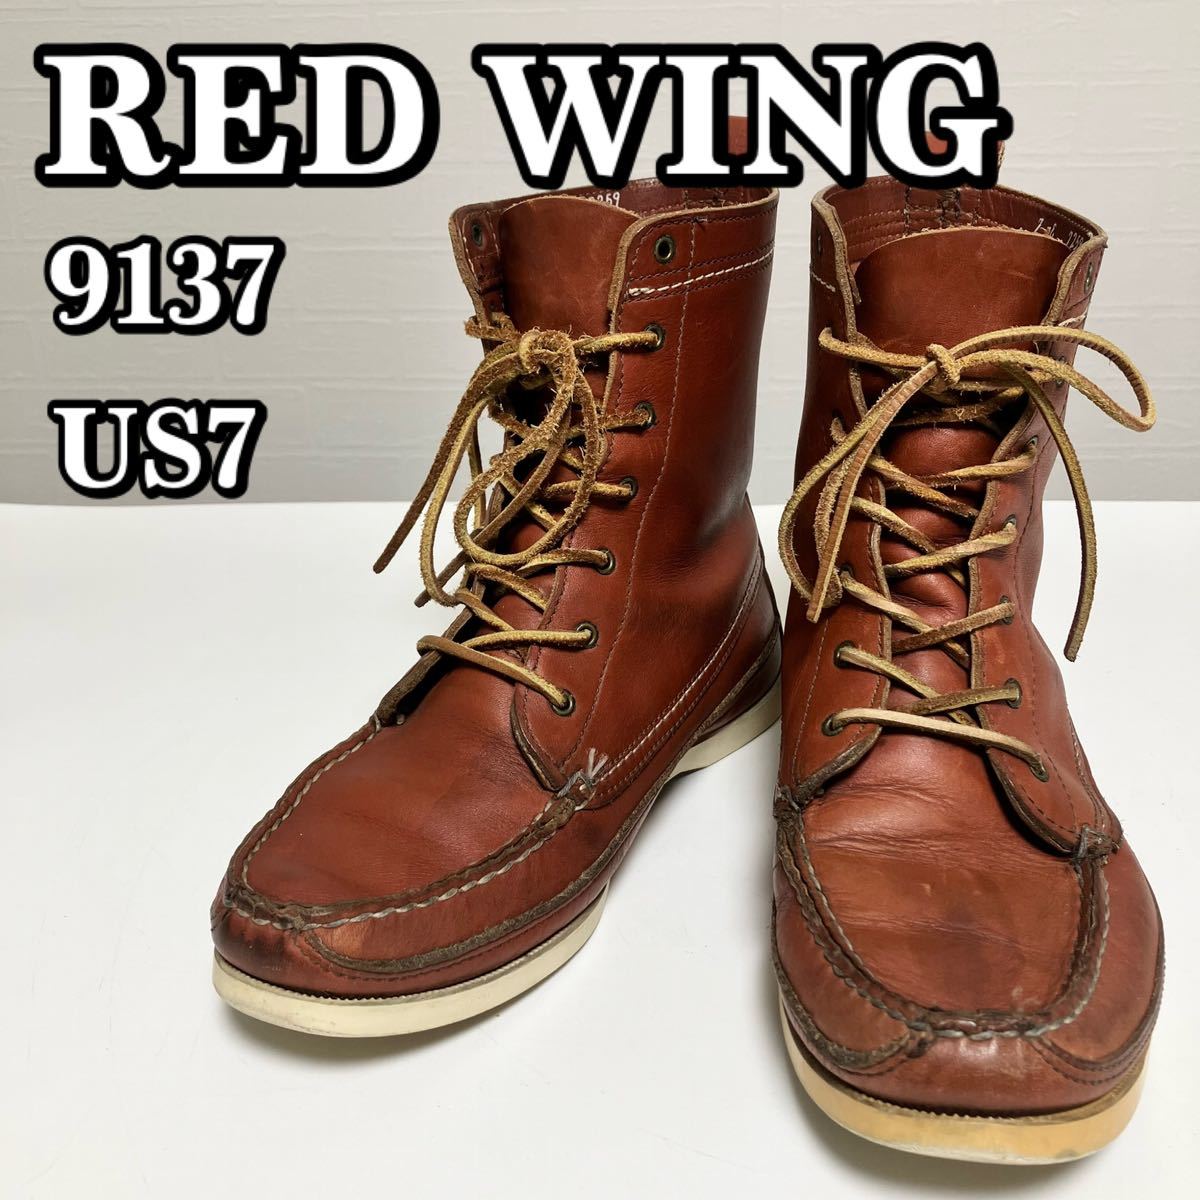 RED WING ワークブーツ レッドウィング 8137 レッドウイング アイ 